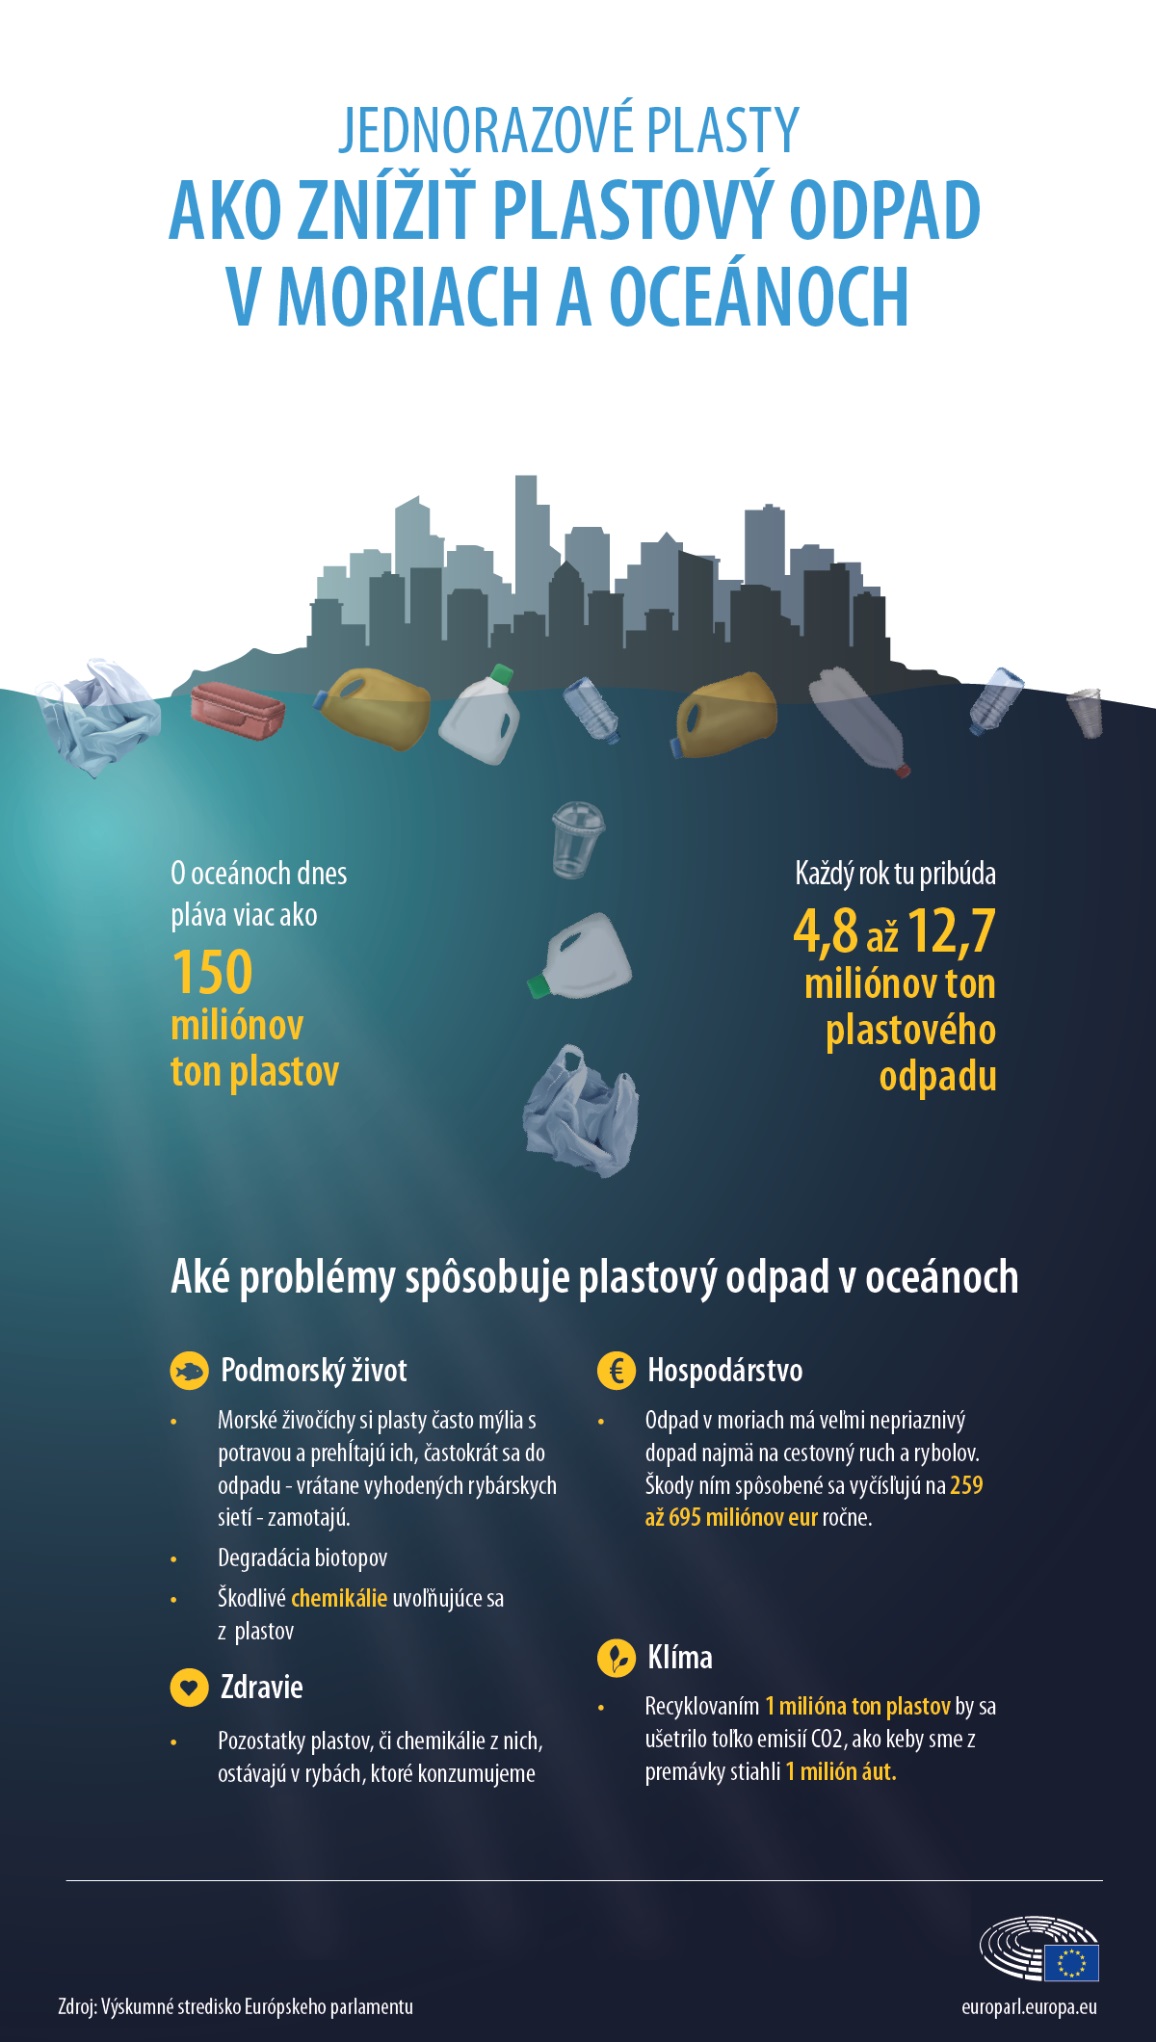 Aké problémy spôsobuje plastový odpad v oceánoch? 